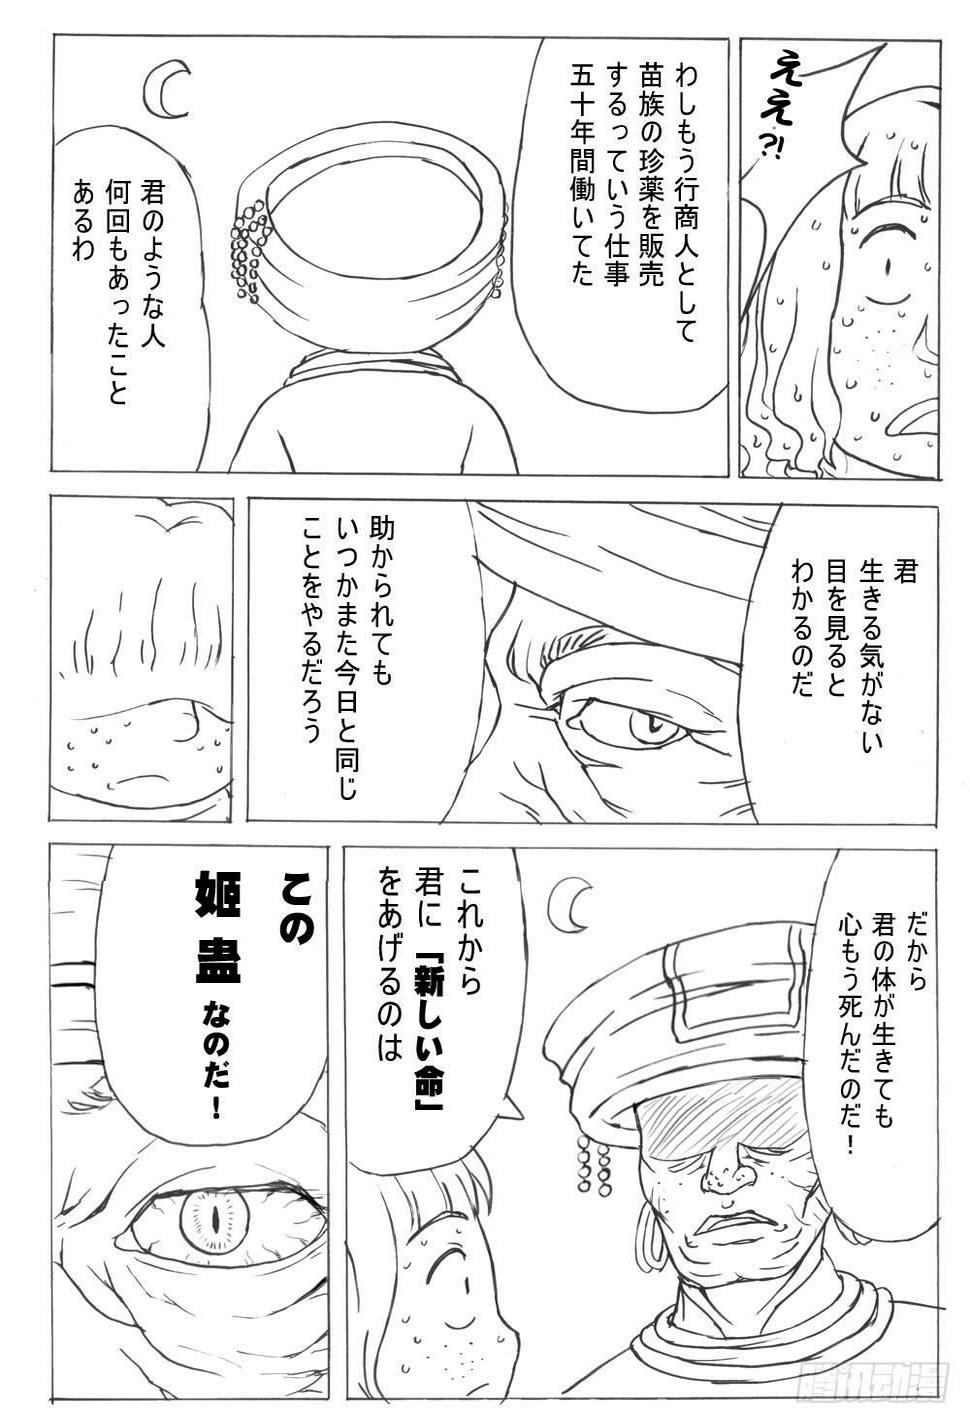 336 未完的漫画3(日文)0